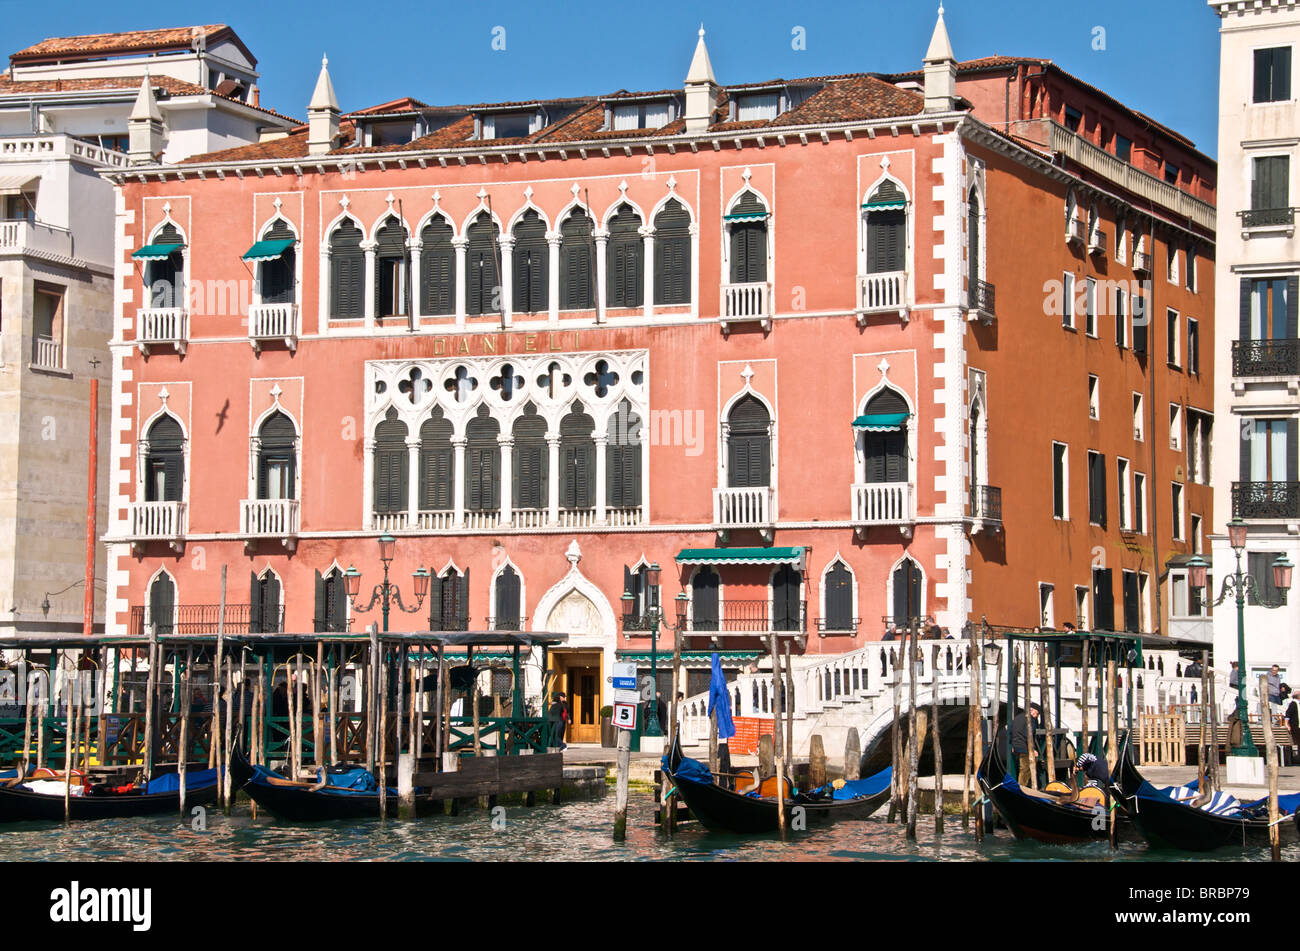 L'Hotel Danieli, bassin de Saint Marc et les gondoles, Venise, UNESCO World Heritage Site, Veneto, Italie Banque D'Images